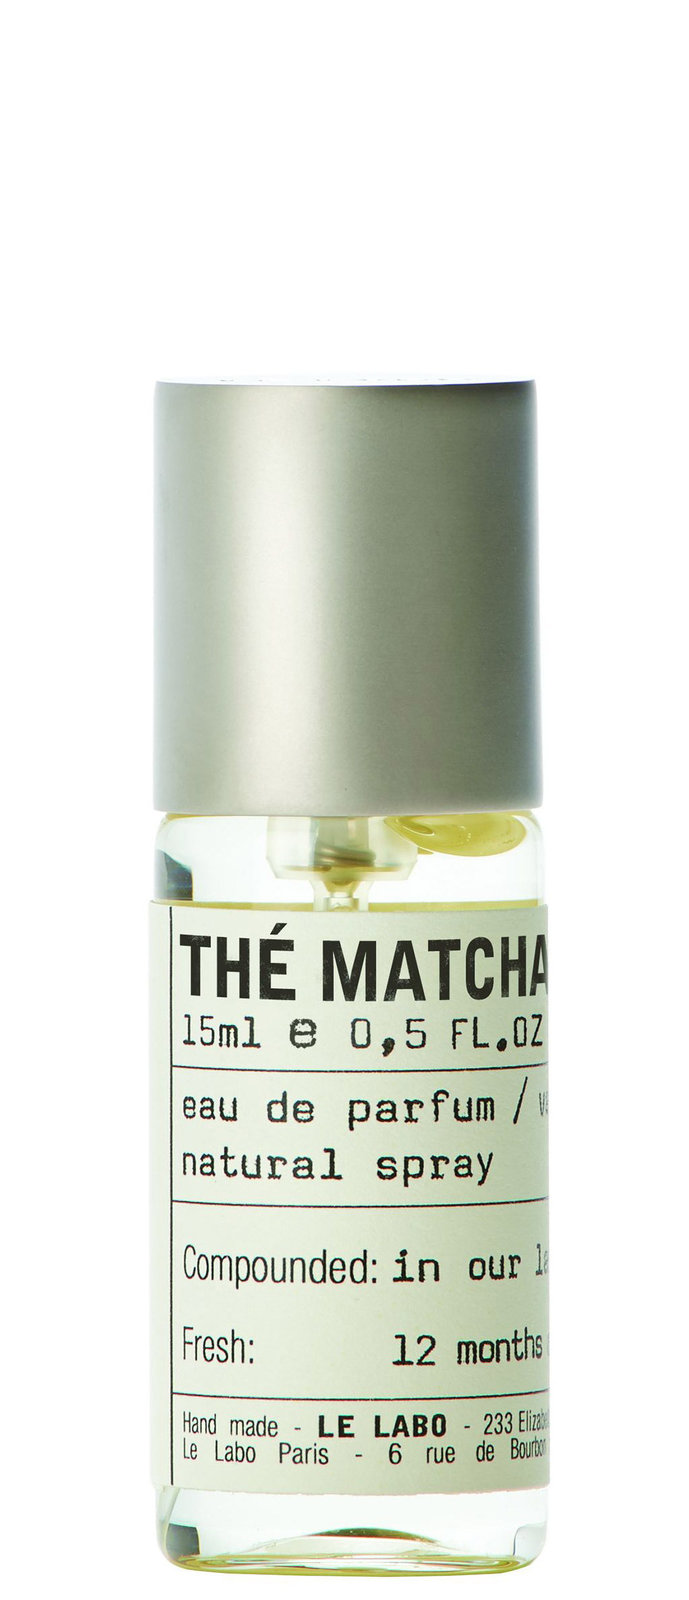 Thé Matcha 26 Eau de Parfum